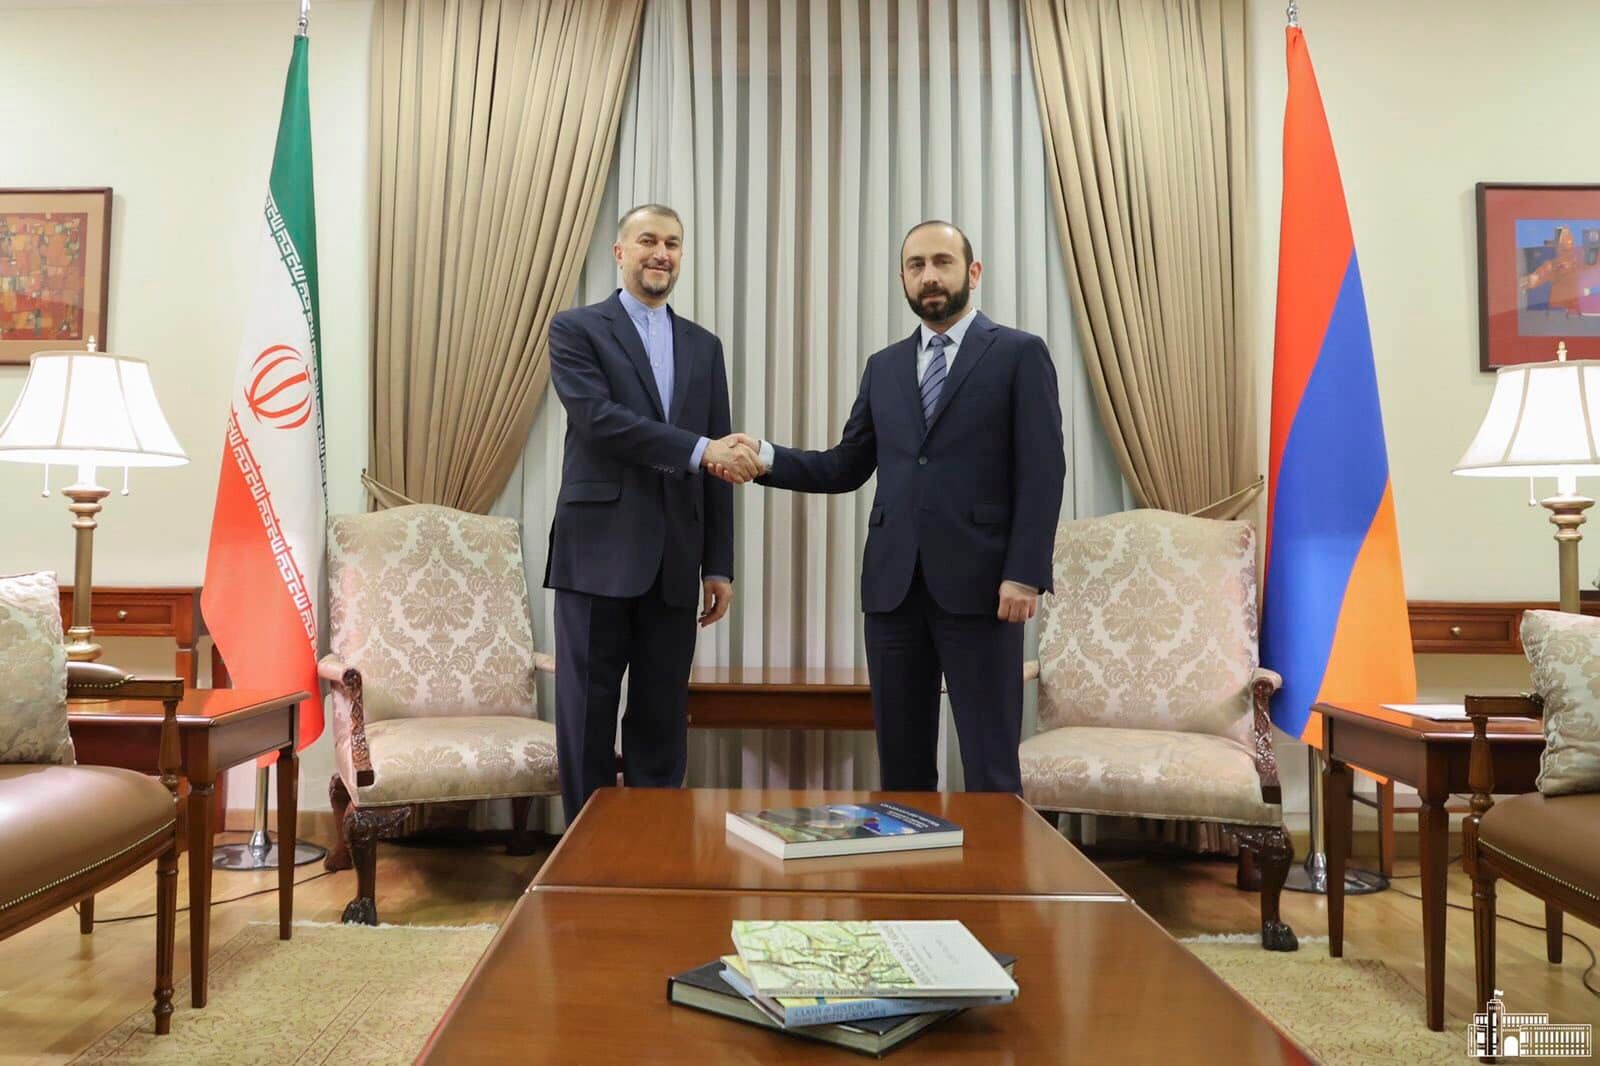 Մեկնարկել է Իրանի ԱԳ նախարարի պաշտոնական այցը Երևան